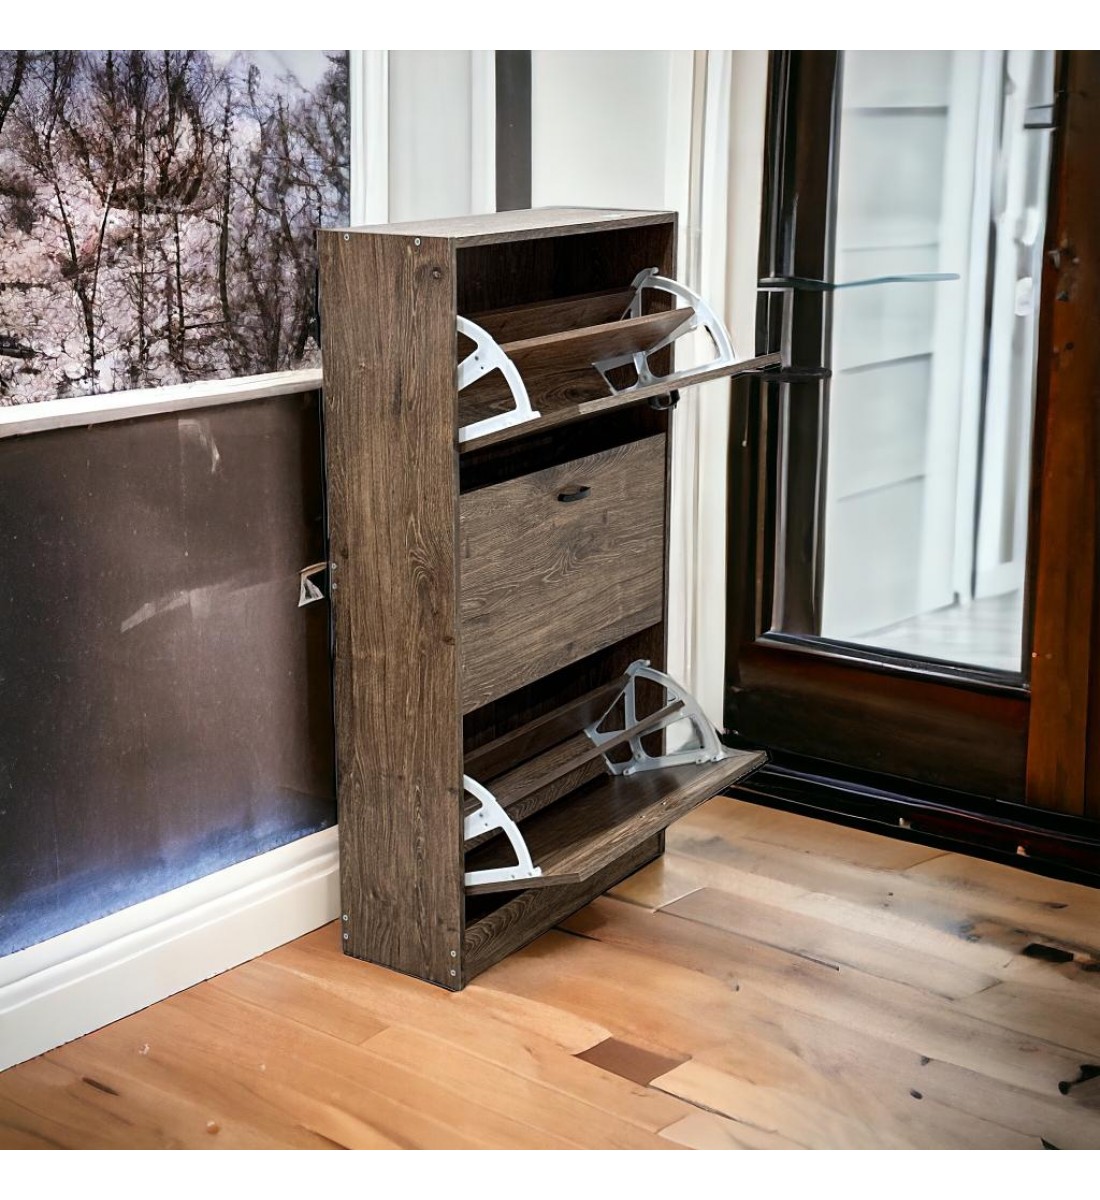 خزانة لتنظيم الاحذية خشبية بثلاث طبقات مع 3ادراج   من ليفينج، مقاس 63 × 24 × 115 سم